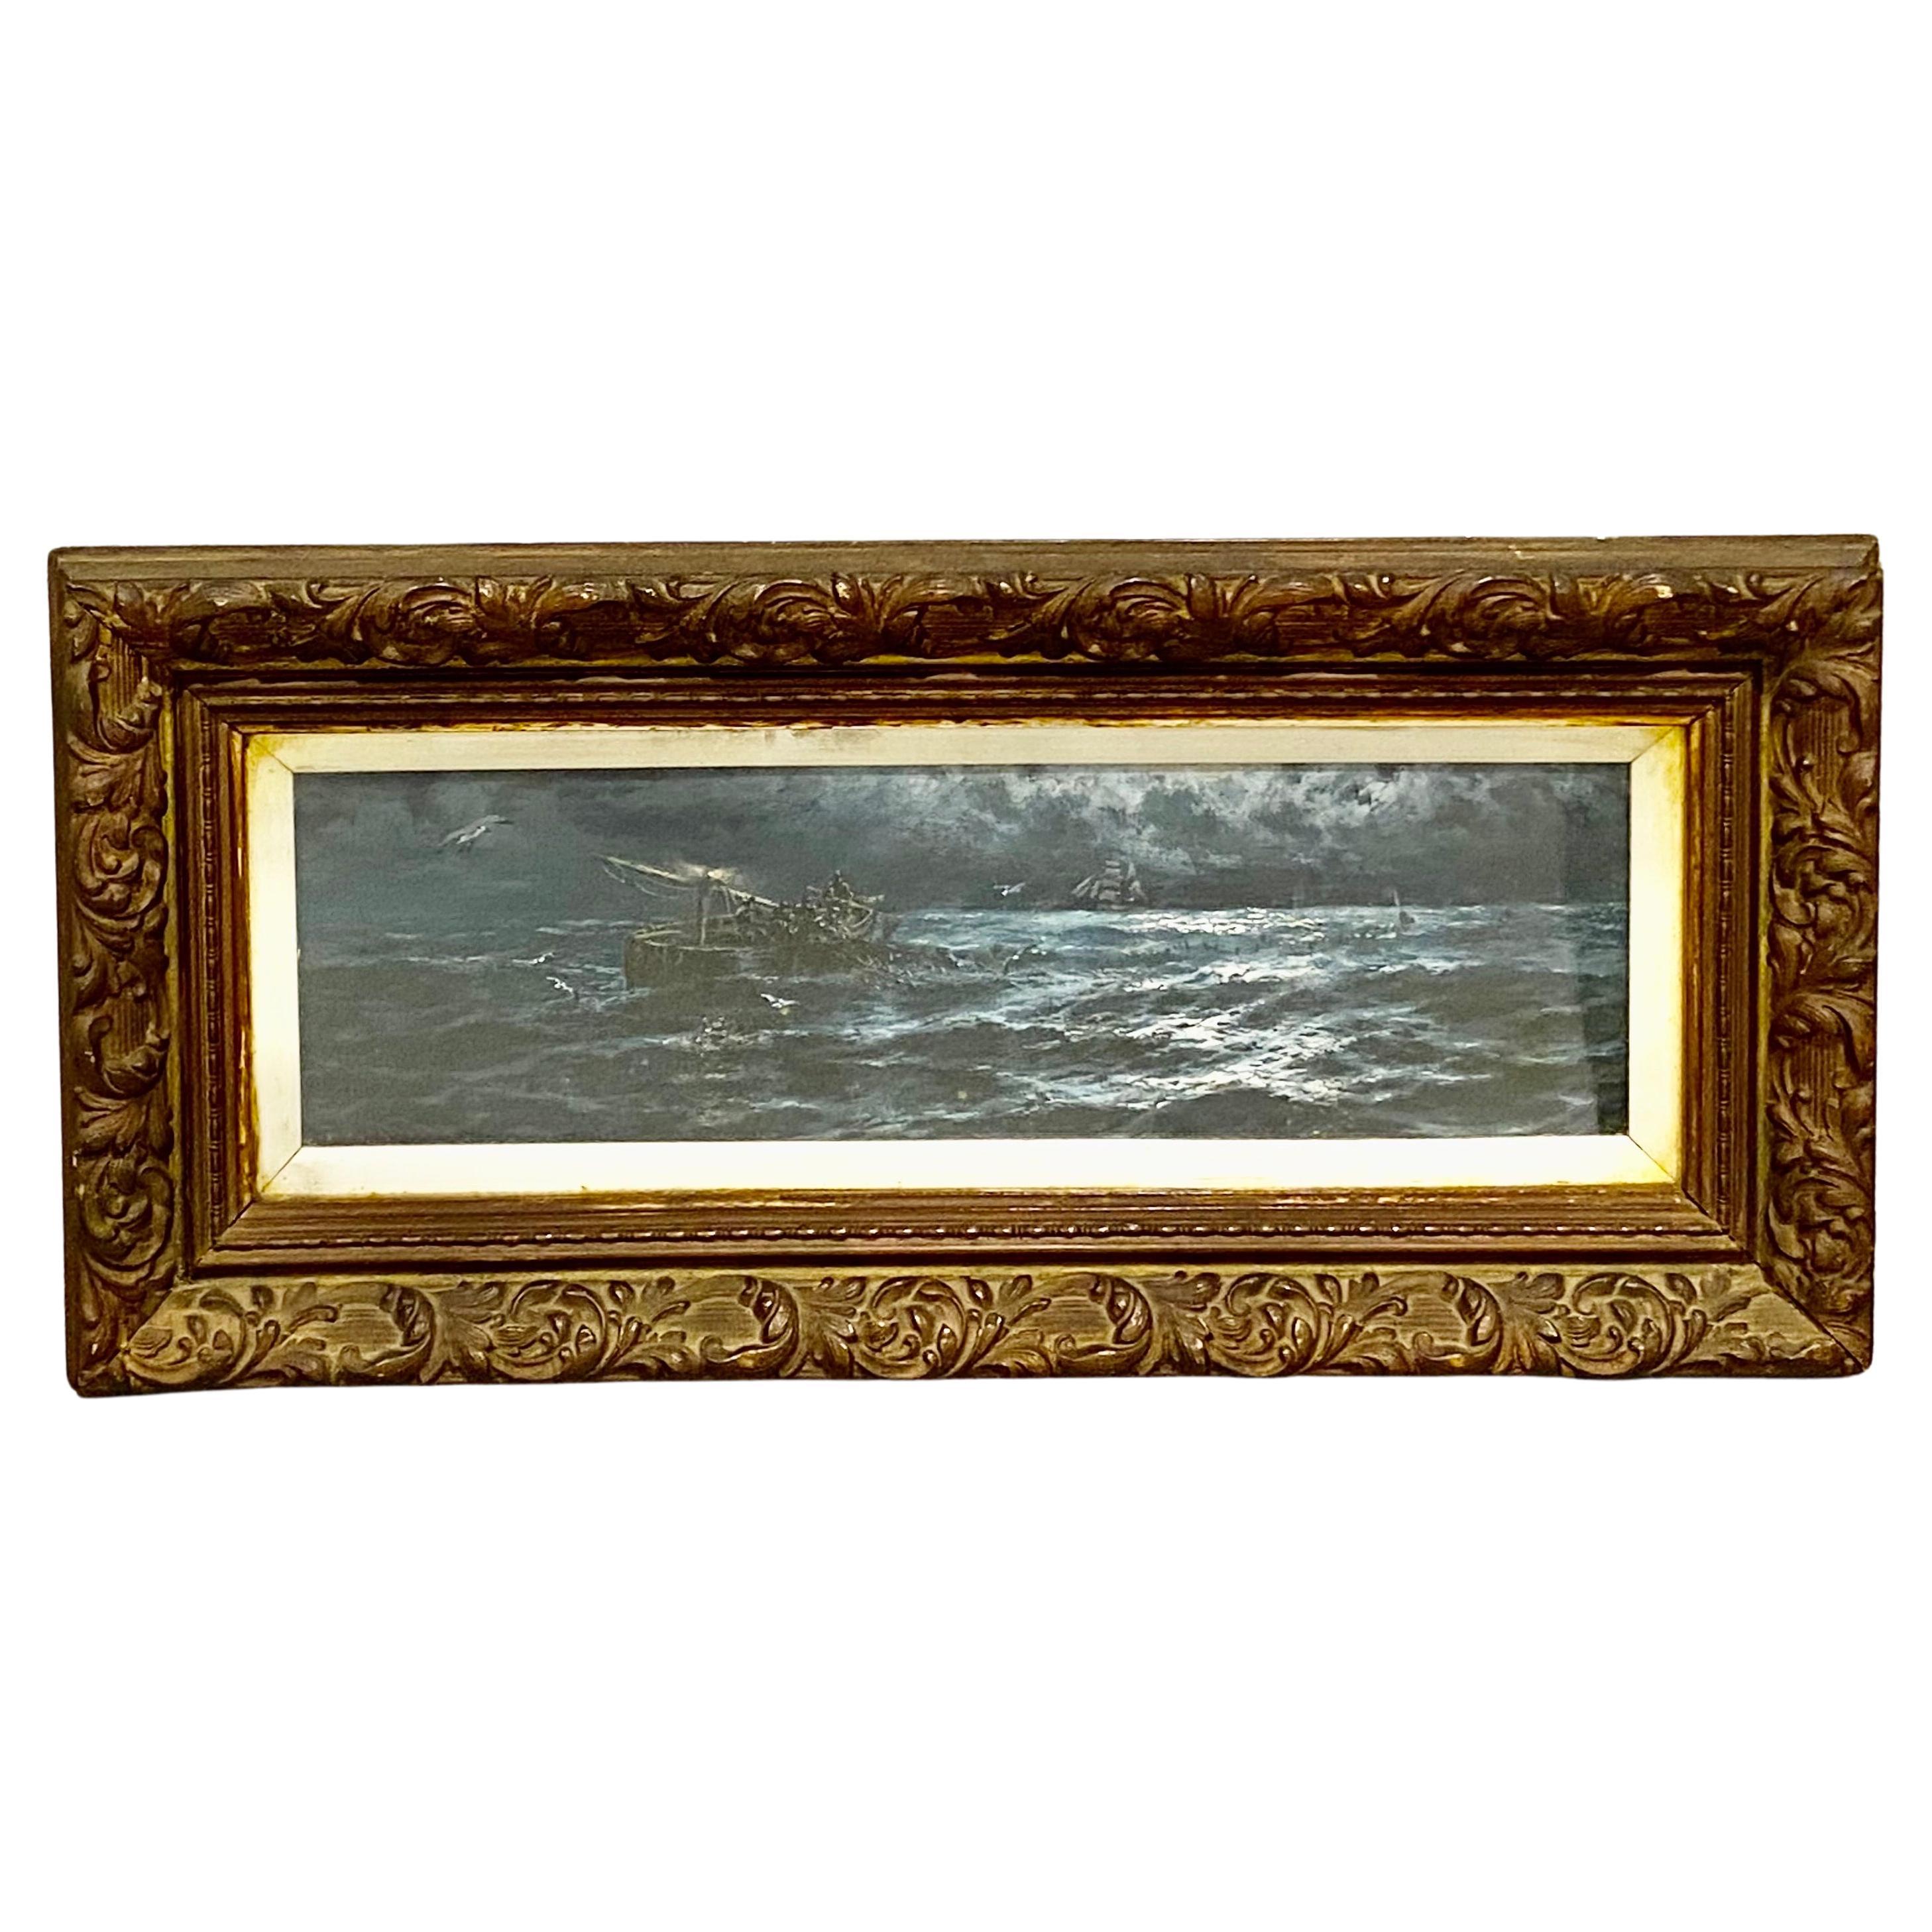 Une paire de peintures de marine de très belle qualité par Thomas Rose Miles (anglais 1869-1910). 
Il est surtout connu pour avoir produit des scènes marines dramatiques, souvent situées sur la côte nord-est de l'Angleterre. Ses œuvres capturent